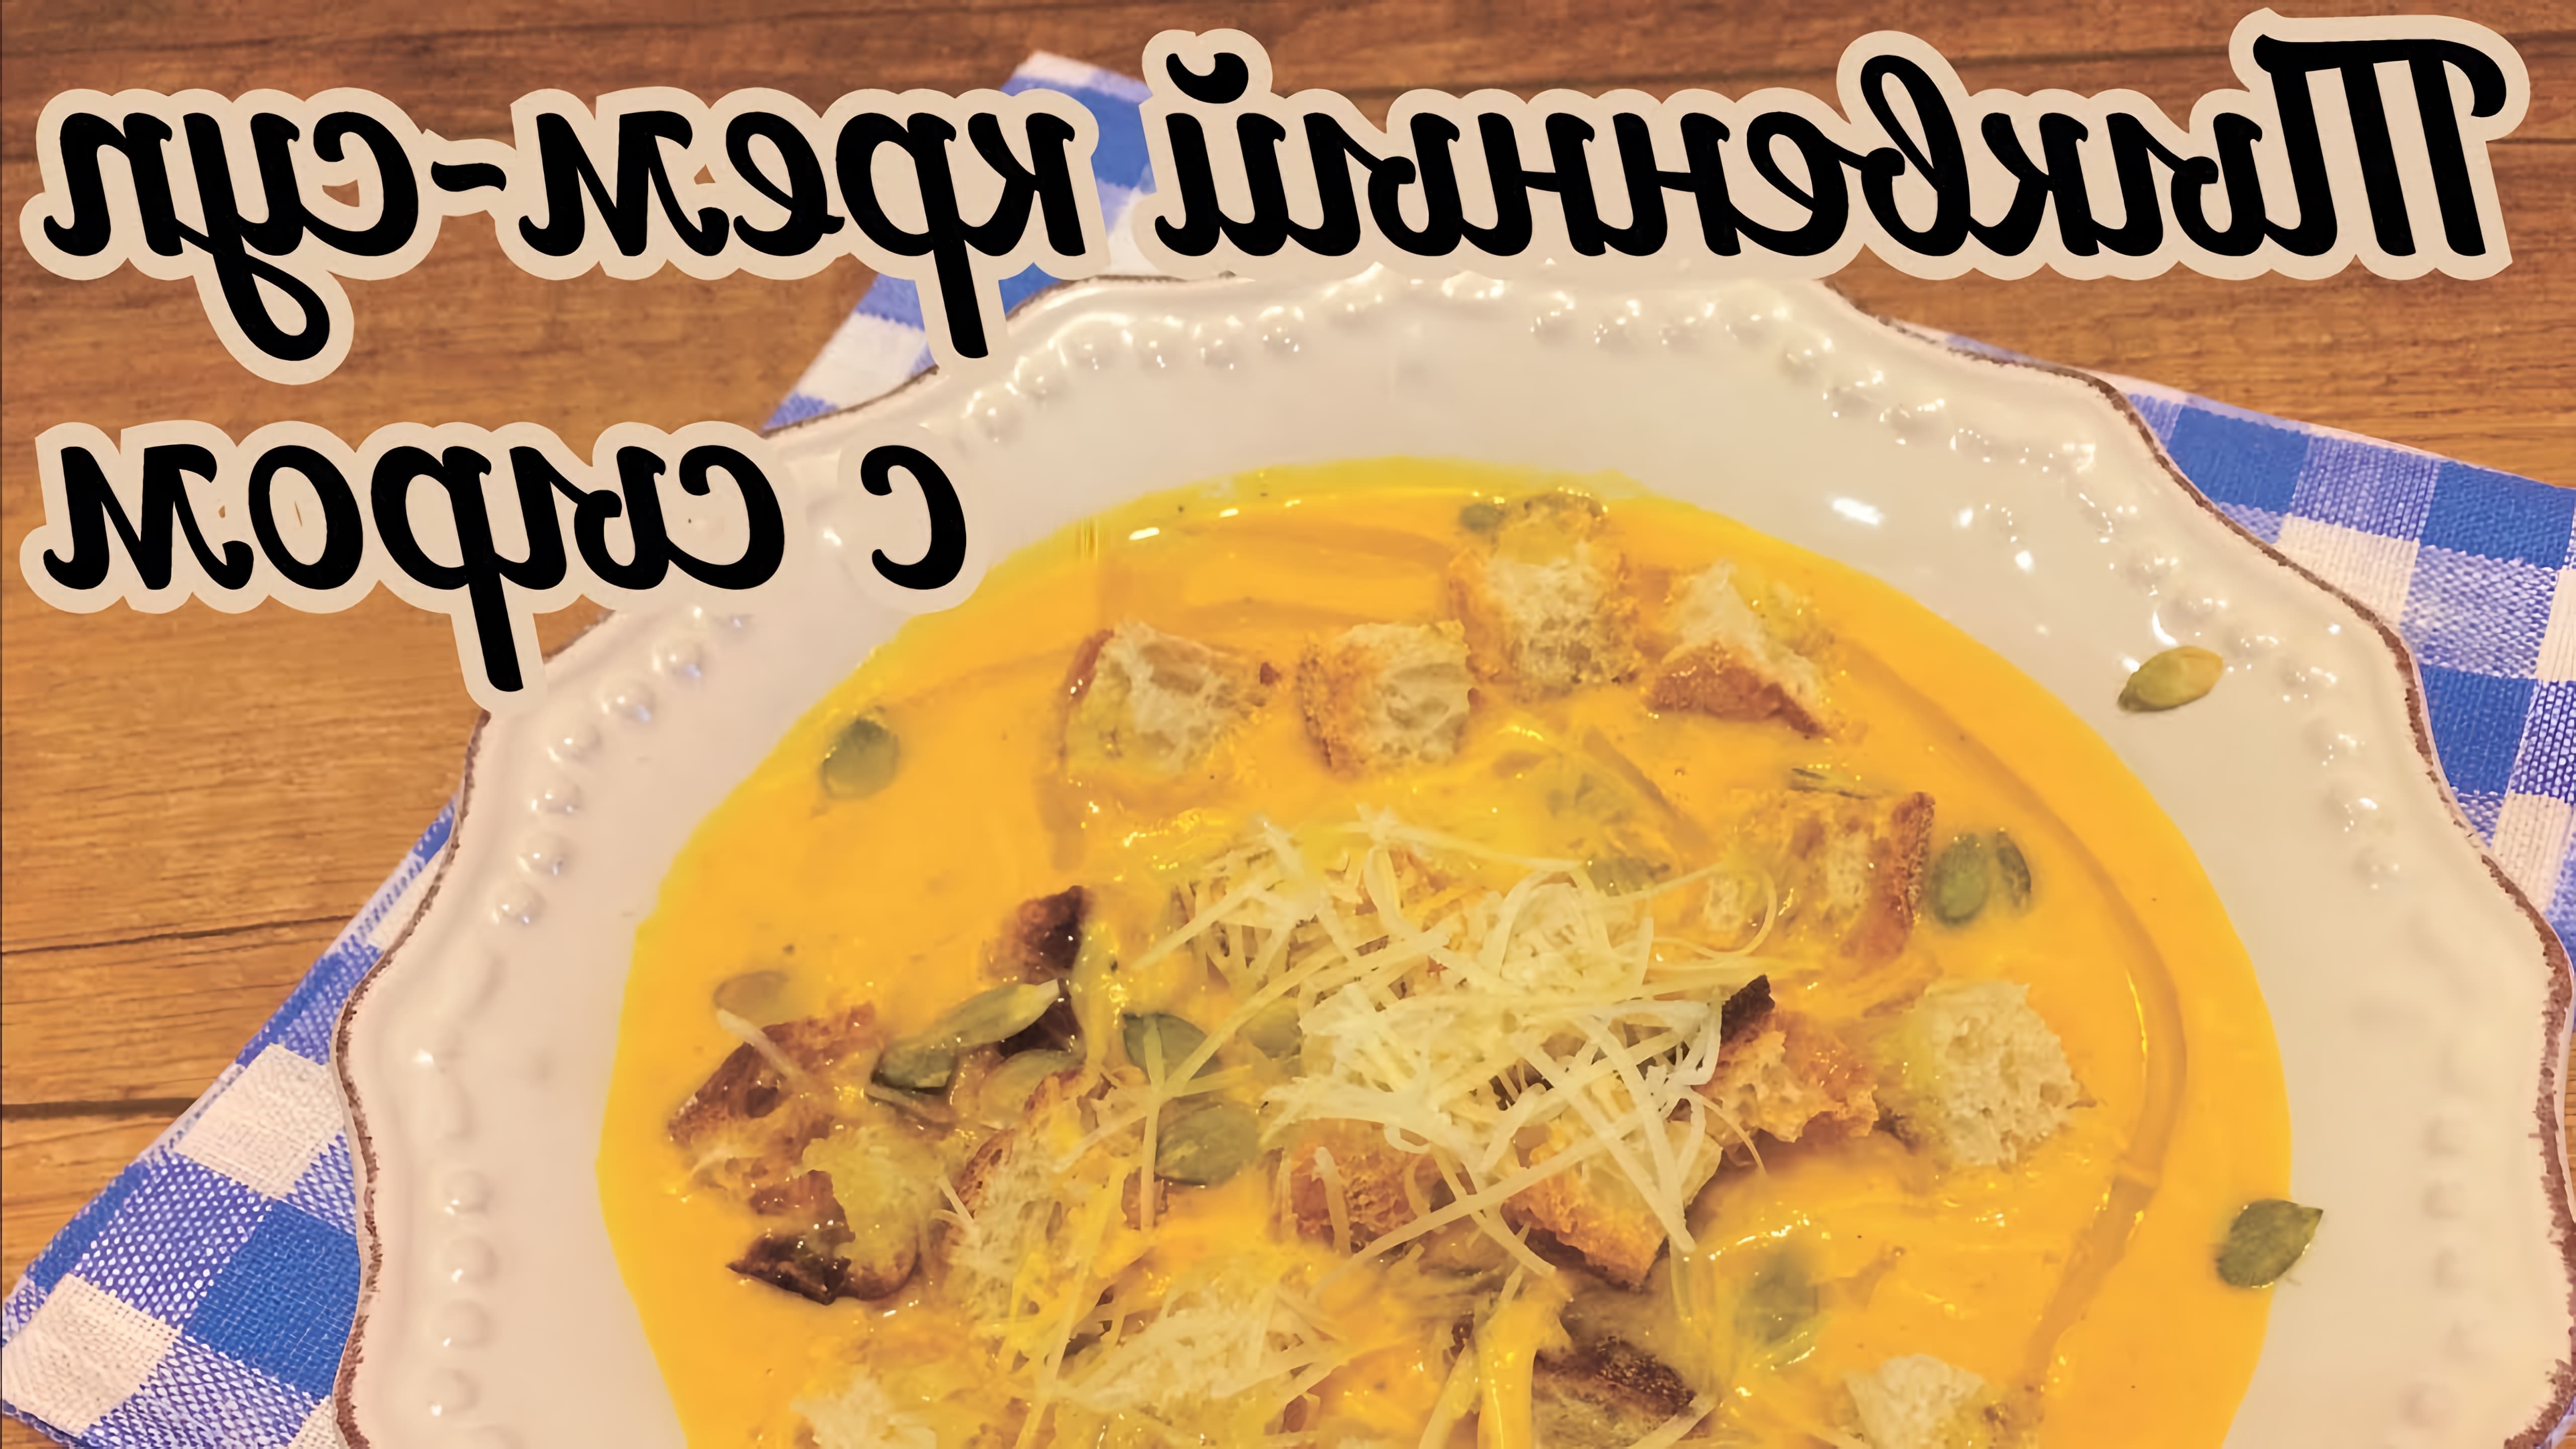 В этом видео демонстрируется рецепт приготовления тыквенного супа пюре с плавленным сыром и сливками